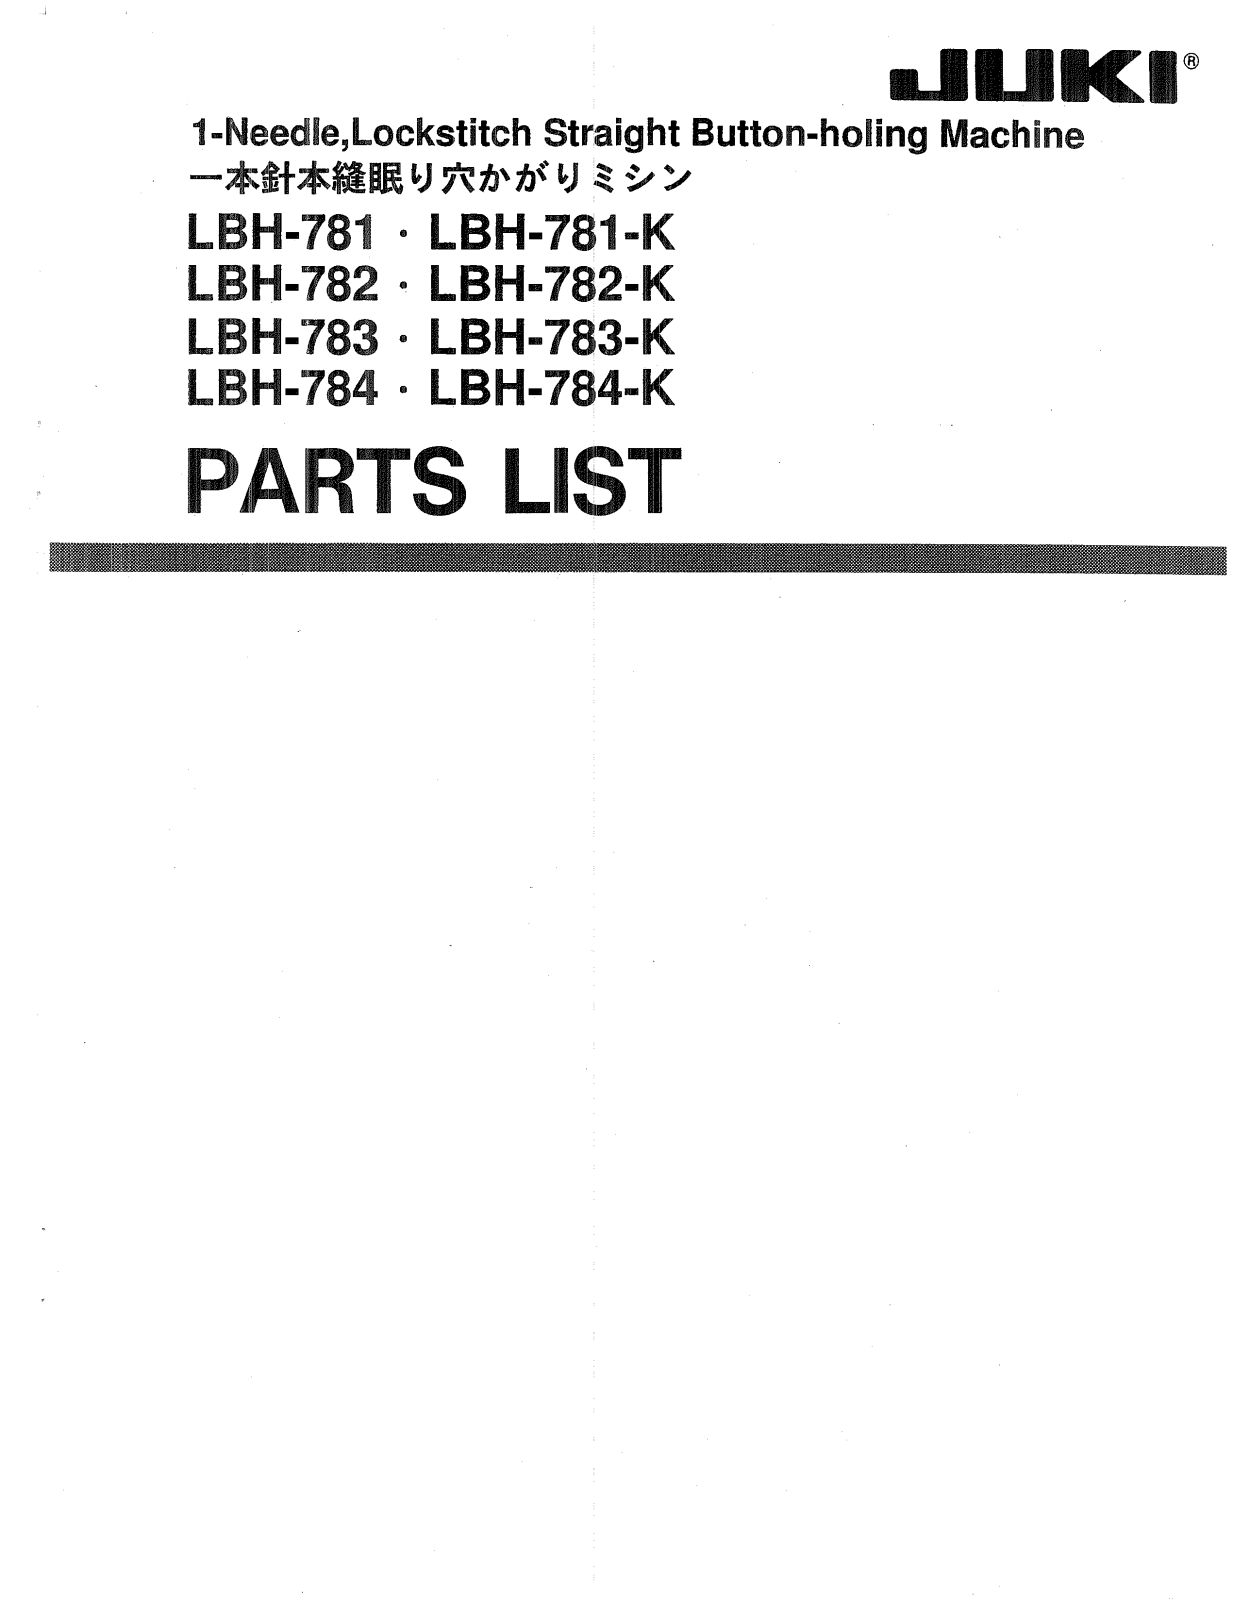 JUKI LBH-781, LBH-782, LBH-783, LBH-784, LBH-781-K Parts List